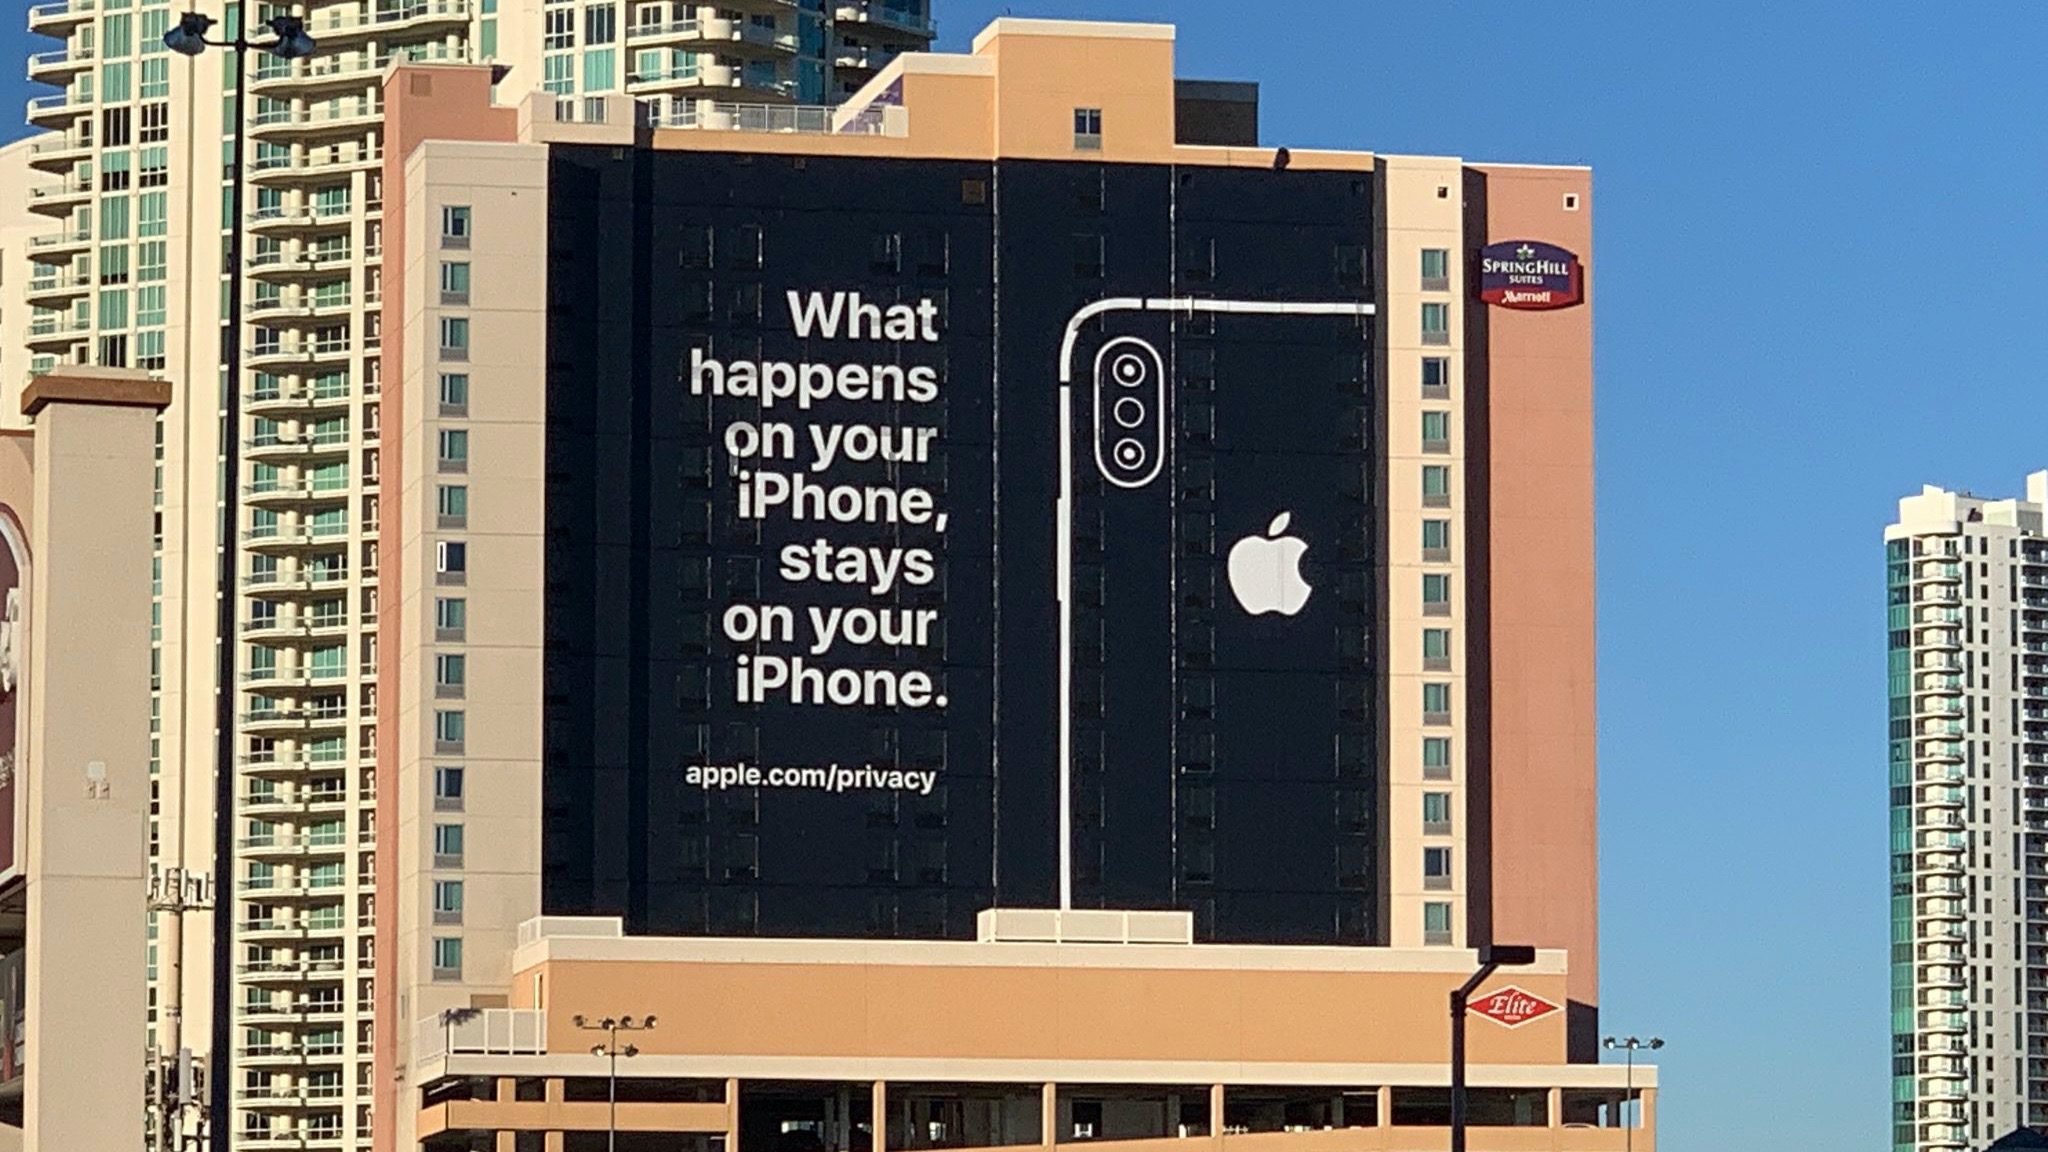 Apple-Werbung auf Hotelwand zu Privatsphäre